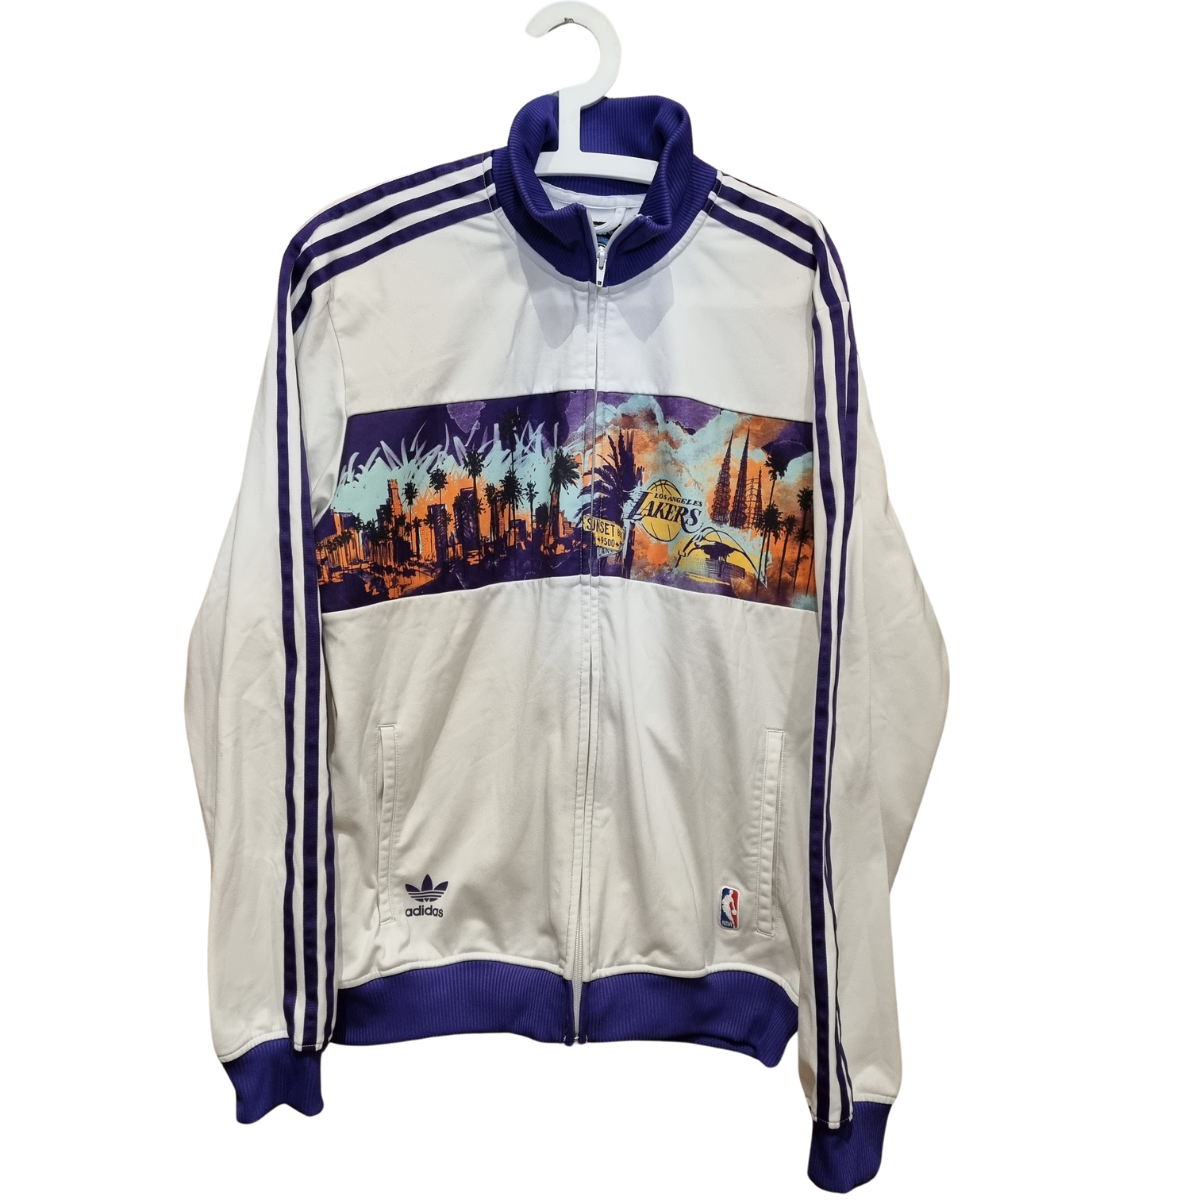 Vintage 2005 Adidas Jacket NBA Los Angeles Lakers